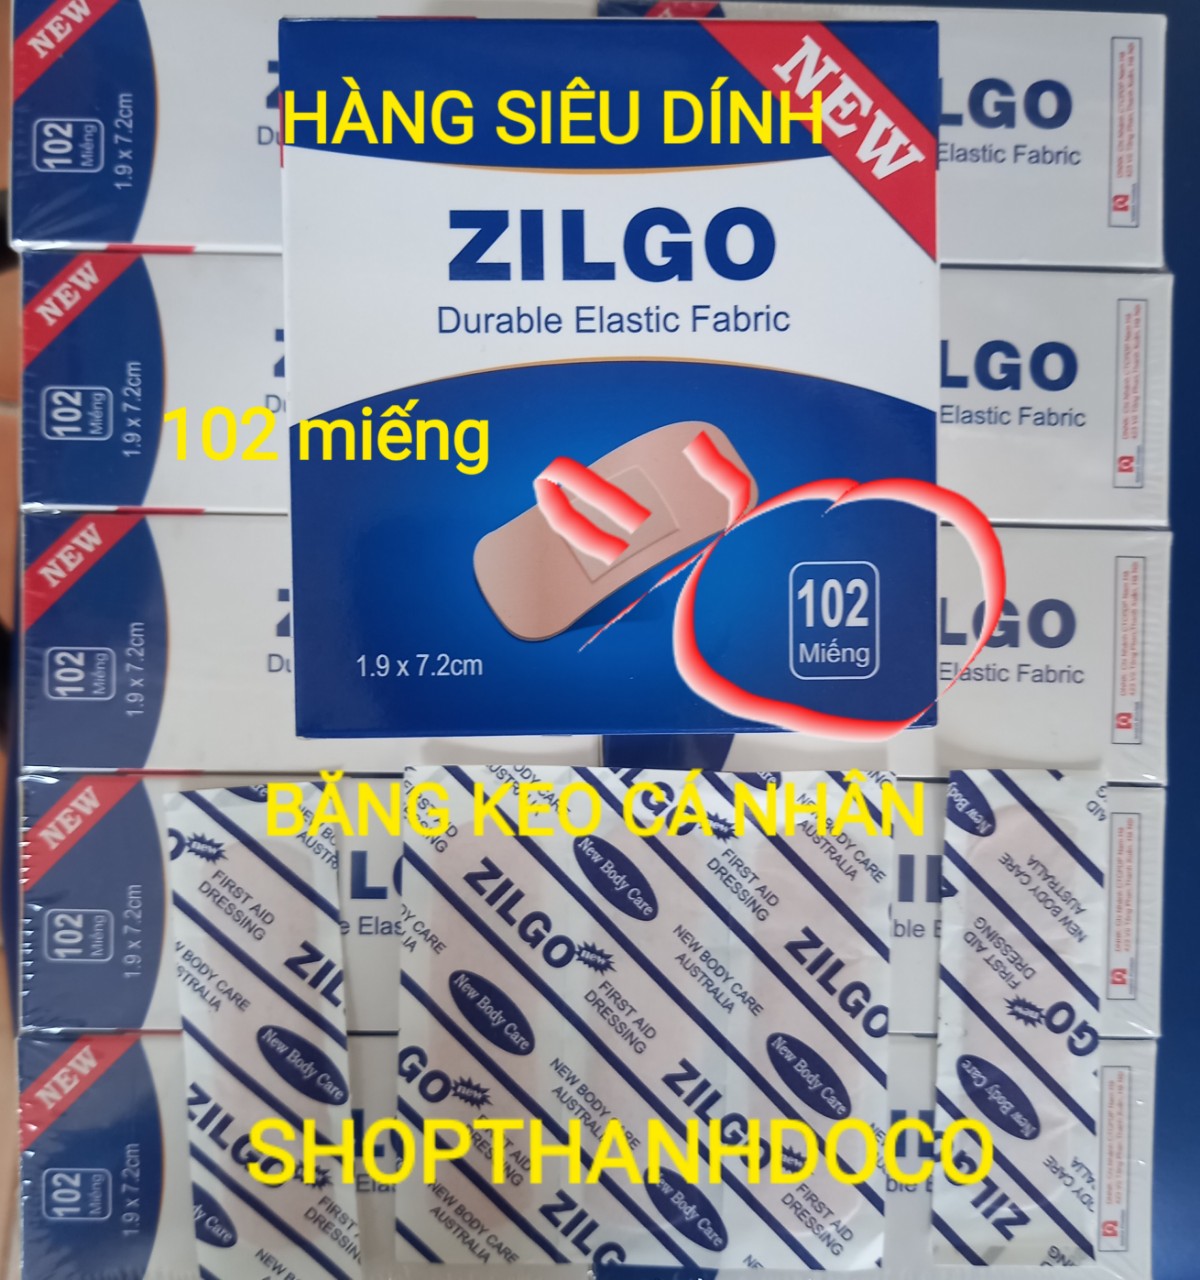 Băng keo cá nhân zilgo chịu được nước 1 hộp 102 miếng  siêu dính - ảnh sản phẩm 9